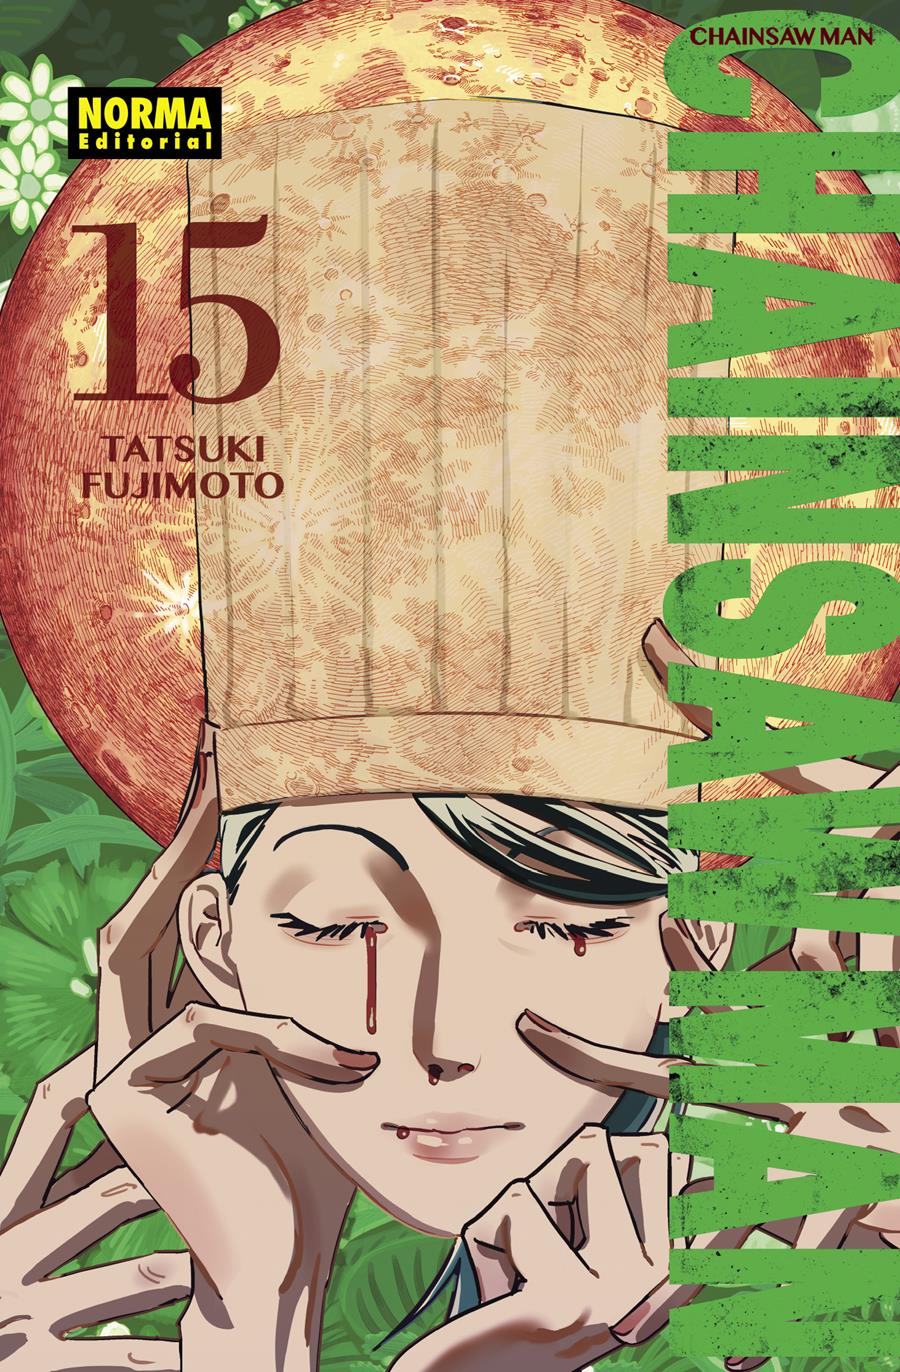 Chainsaw Man 15 | N1223-NOR18 | Tatsuki Fujimoto | Terra de Còmic - Tu tienda de cómics online especializada en cómics, manga y merchandising